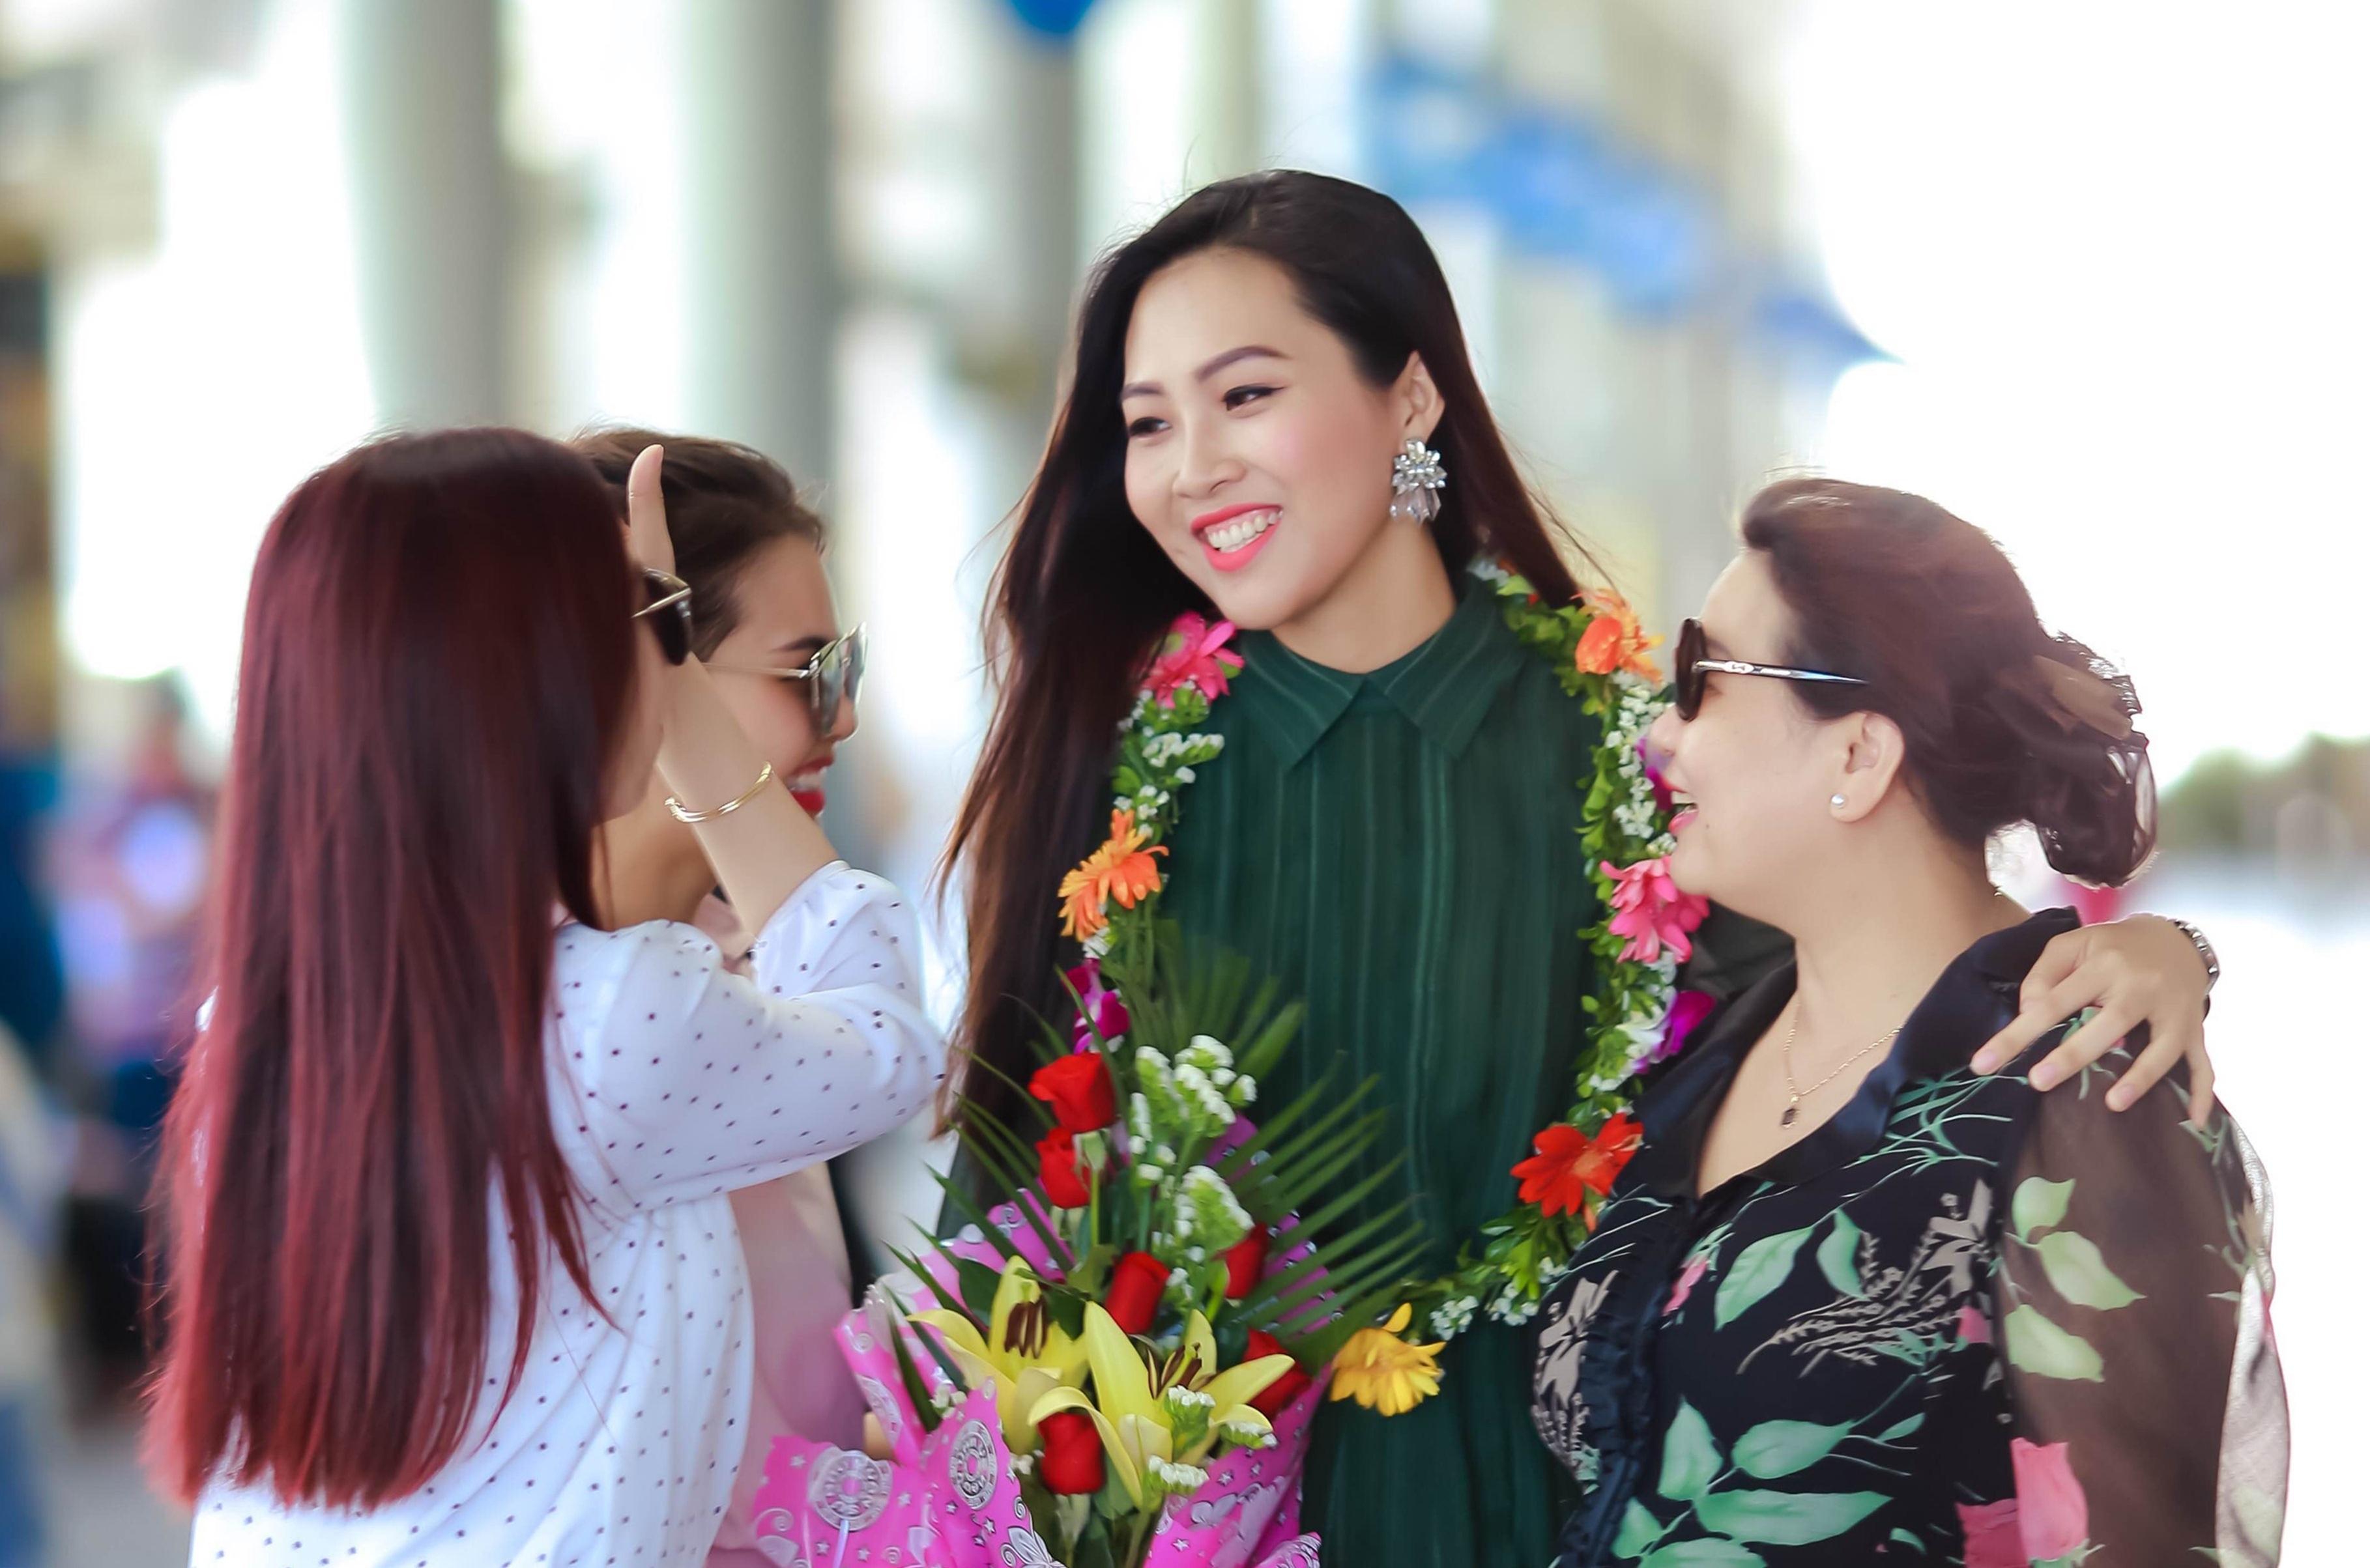 Những cô gái xinh đẹp, tài năng và thông minh sẽ làm nên danh tiếng cho sự kiện Hoa hậu Việt Nam. Xem hình ảnh để cảm nhận sự quyến rũ và ấn tượng của những người đẹp tại cuộc thi.